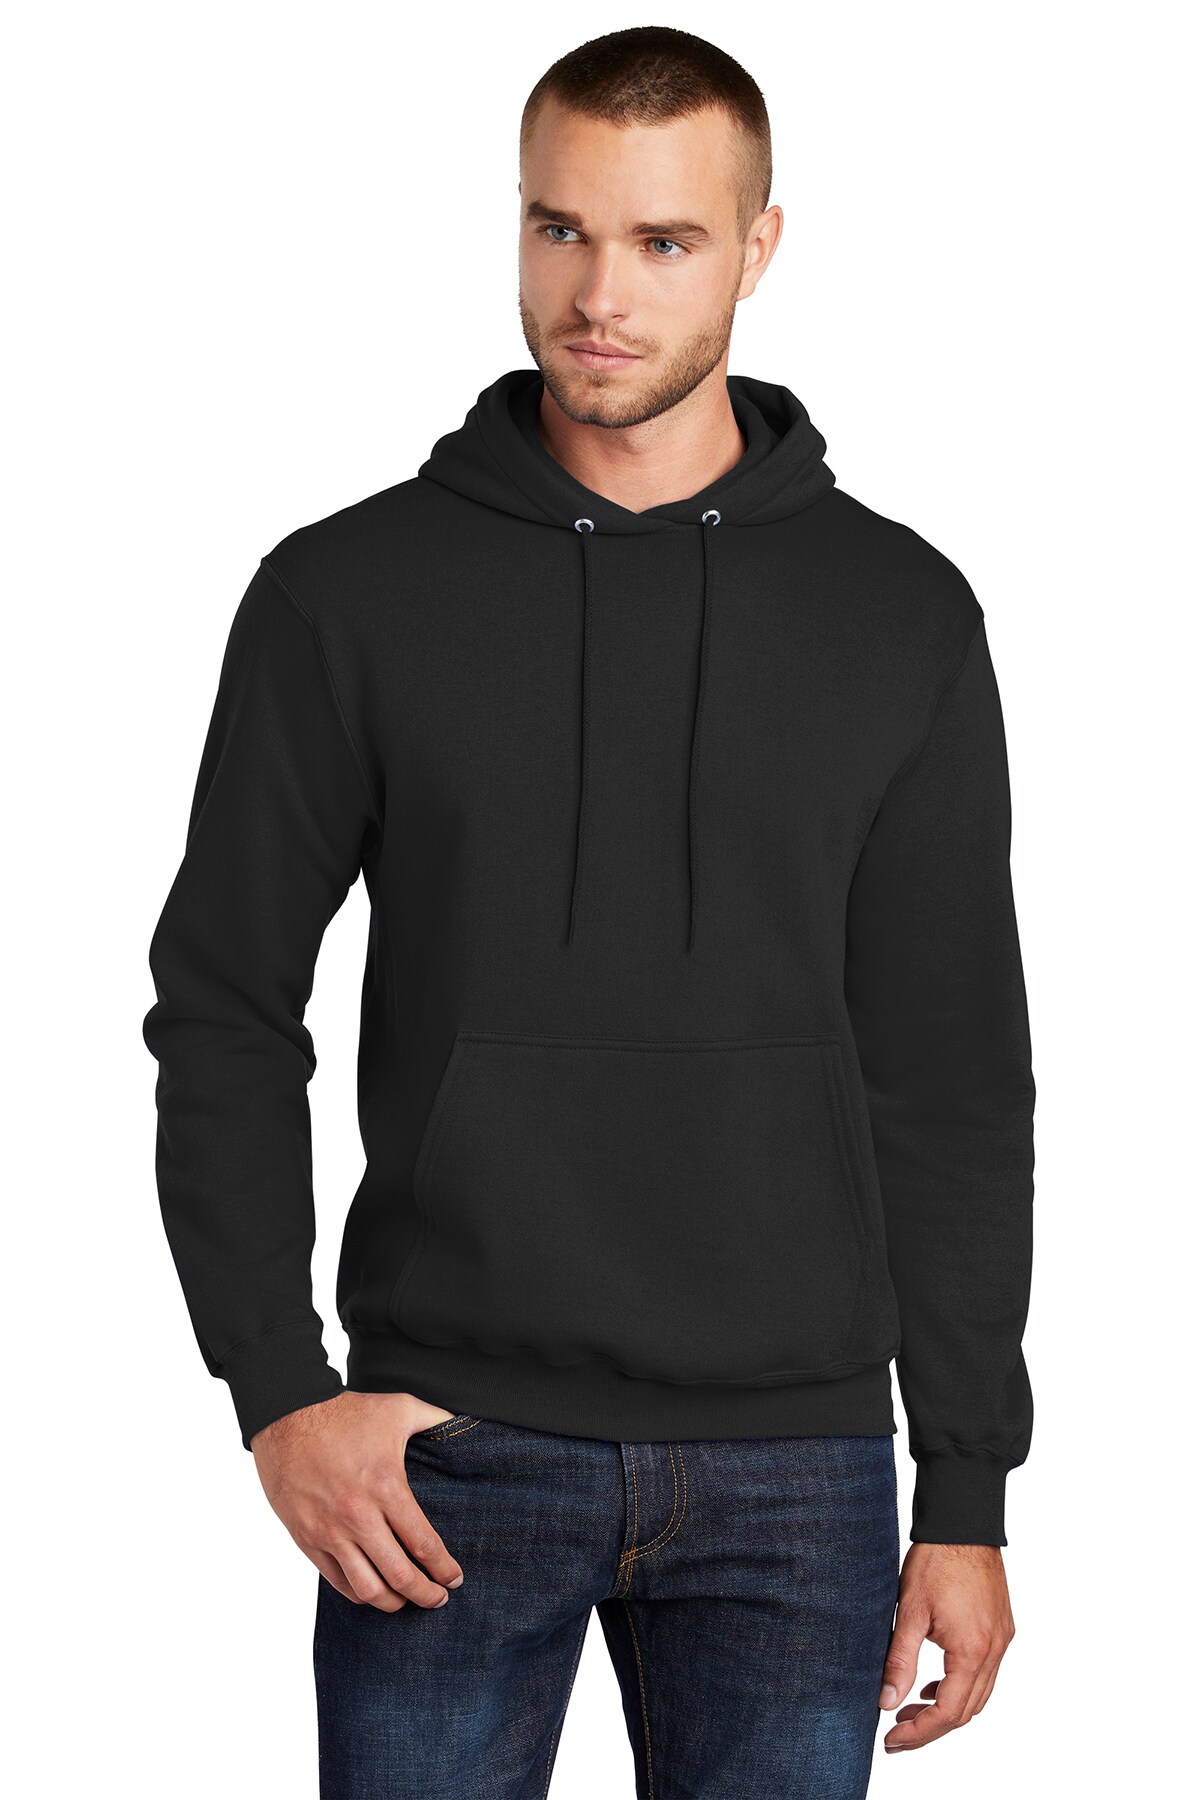 Men's Fleece Pullover Hooded Hoodie Sweatshirt is a popular and